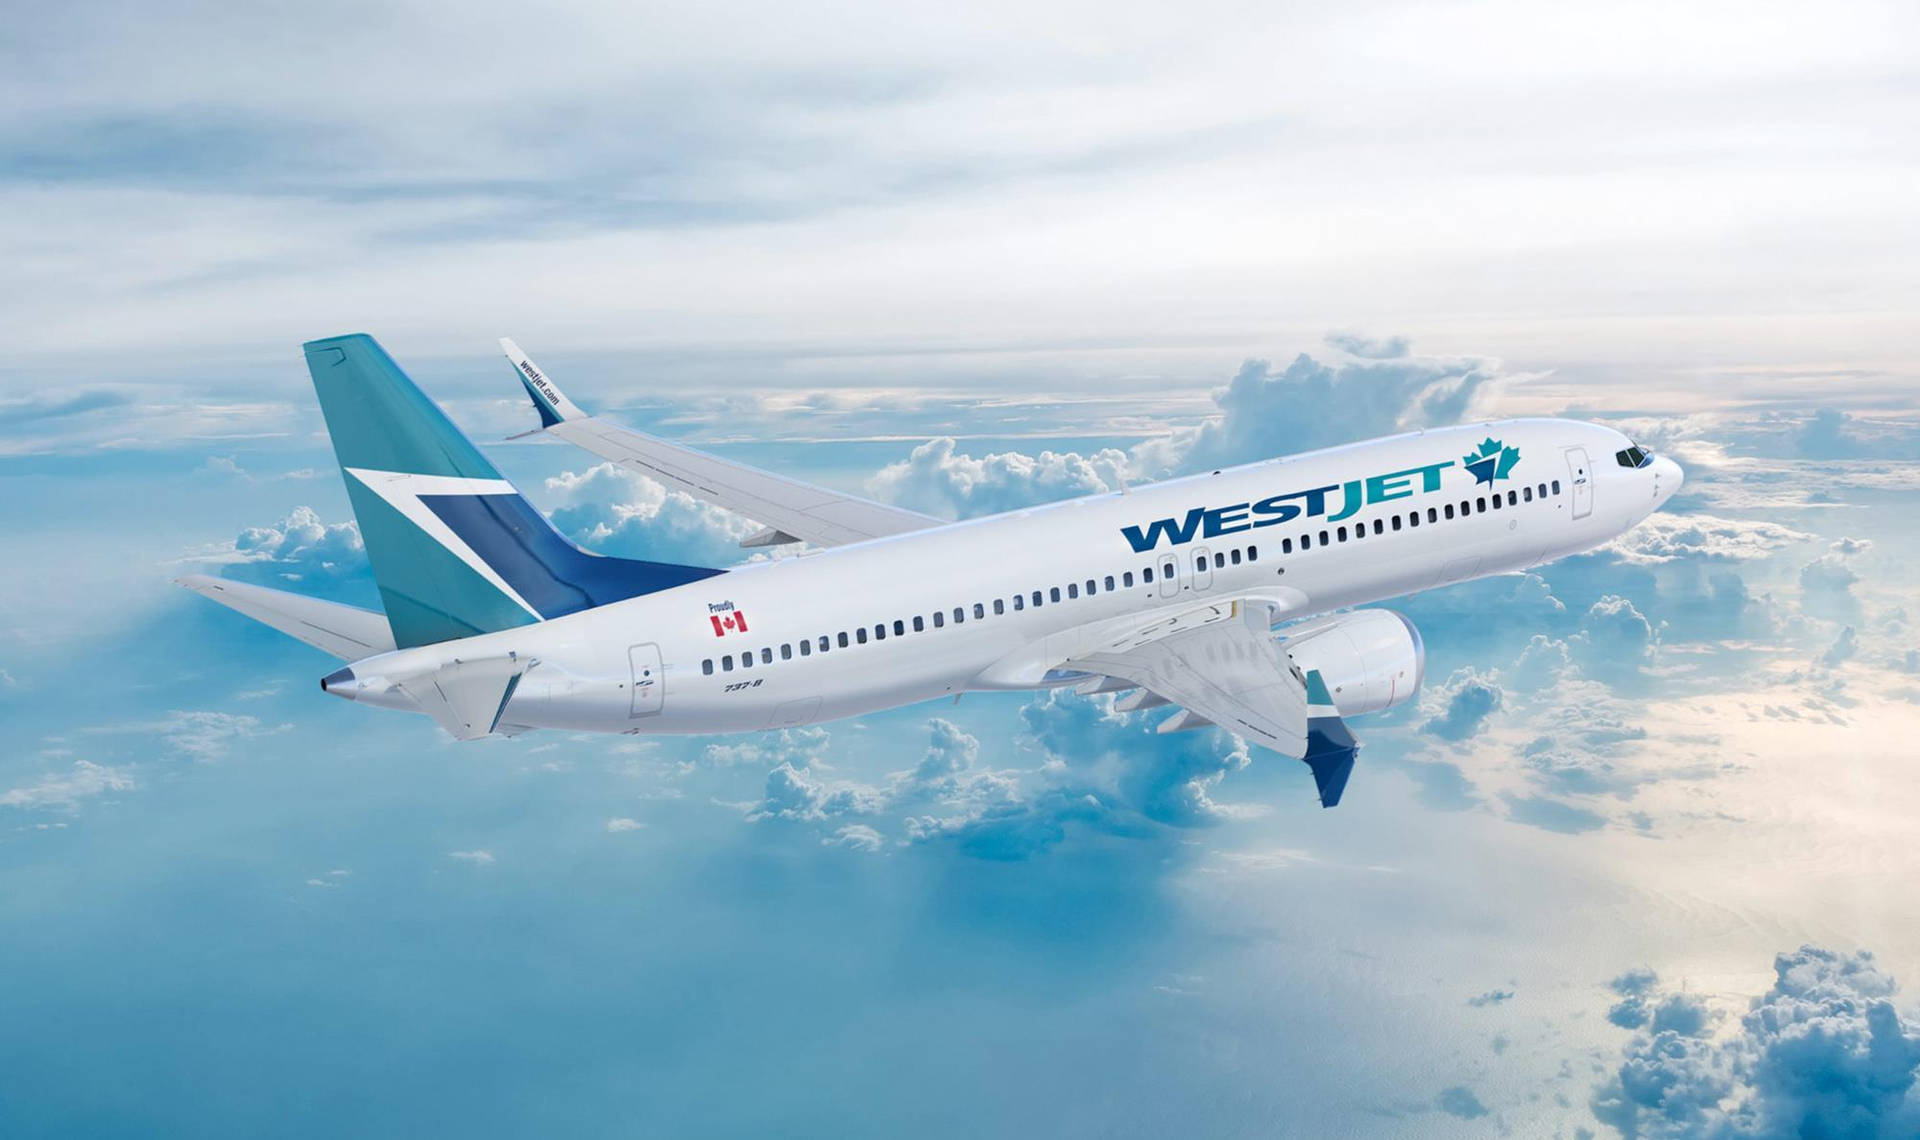 Winging Westjet Airline Plane Wallpaper